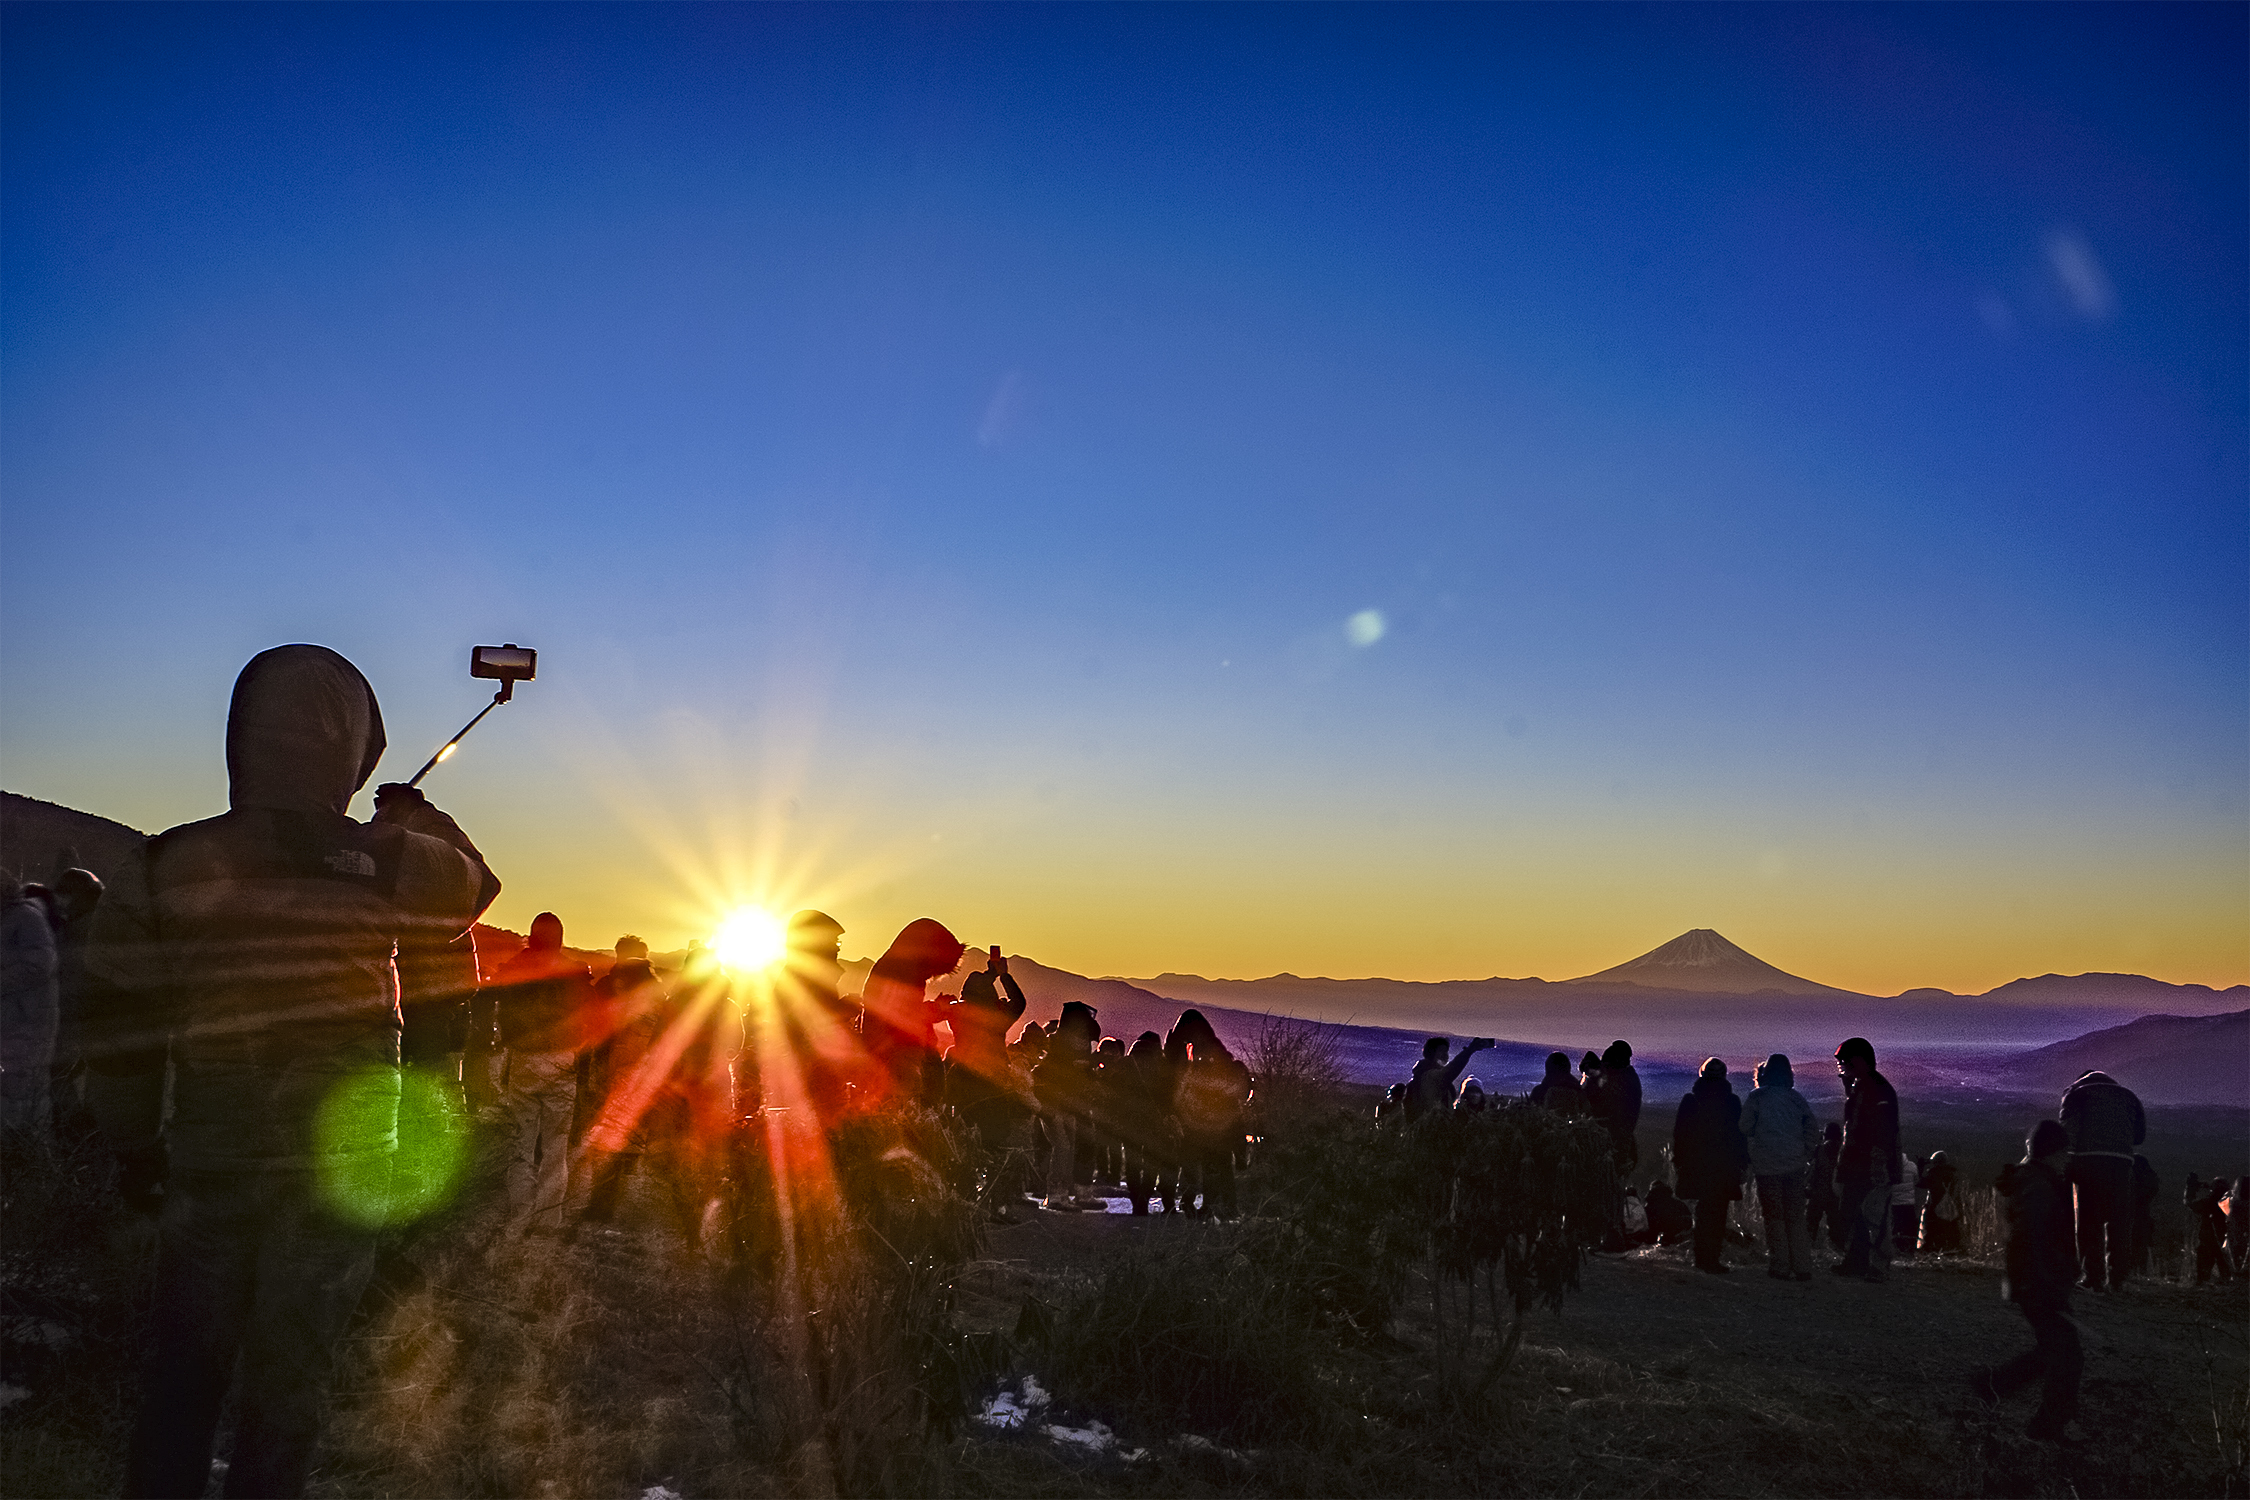 【初日の出イベント】富士見パノラマリゾート・富士見高原スキー場へ黄金色に輝く初日の出と富士山の絶景を見に来ませんか